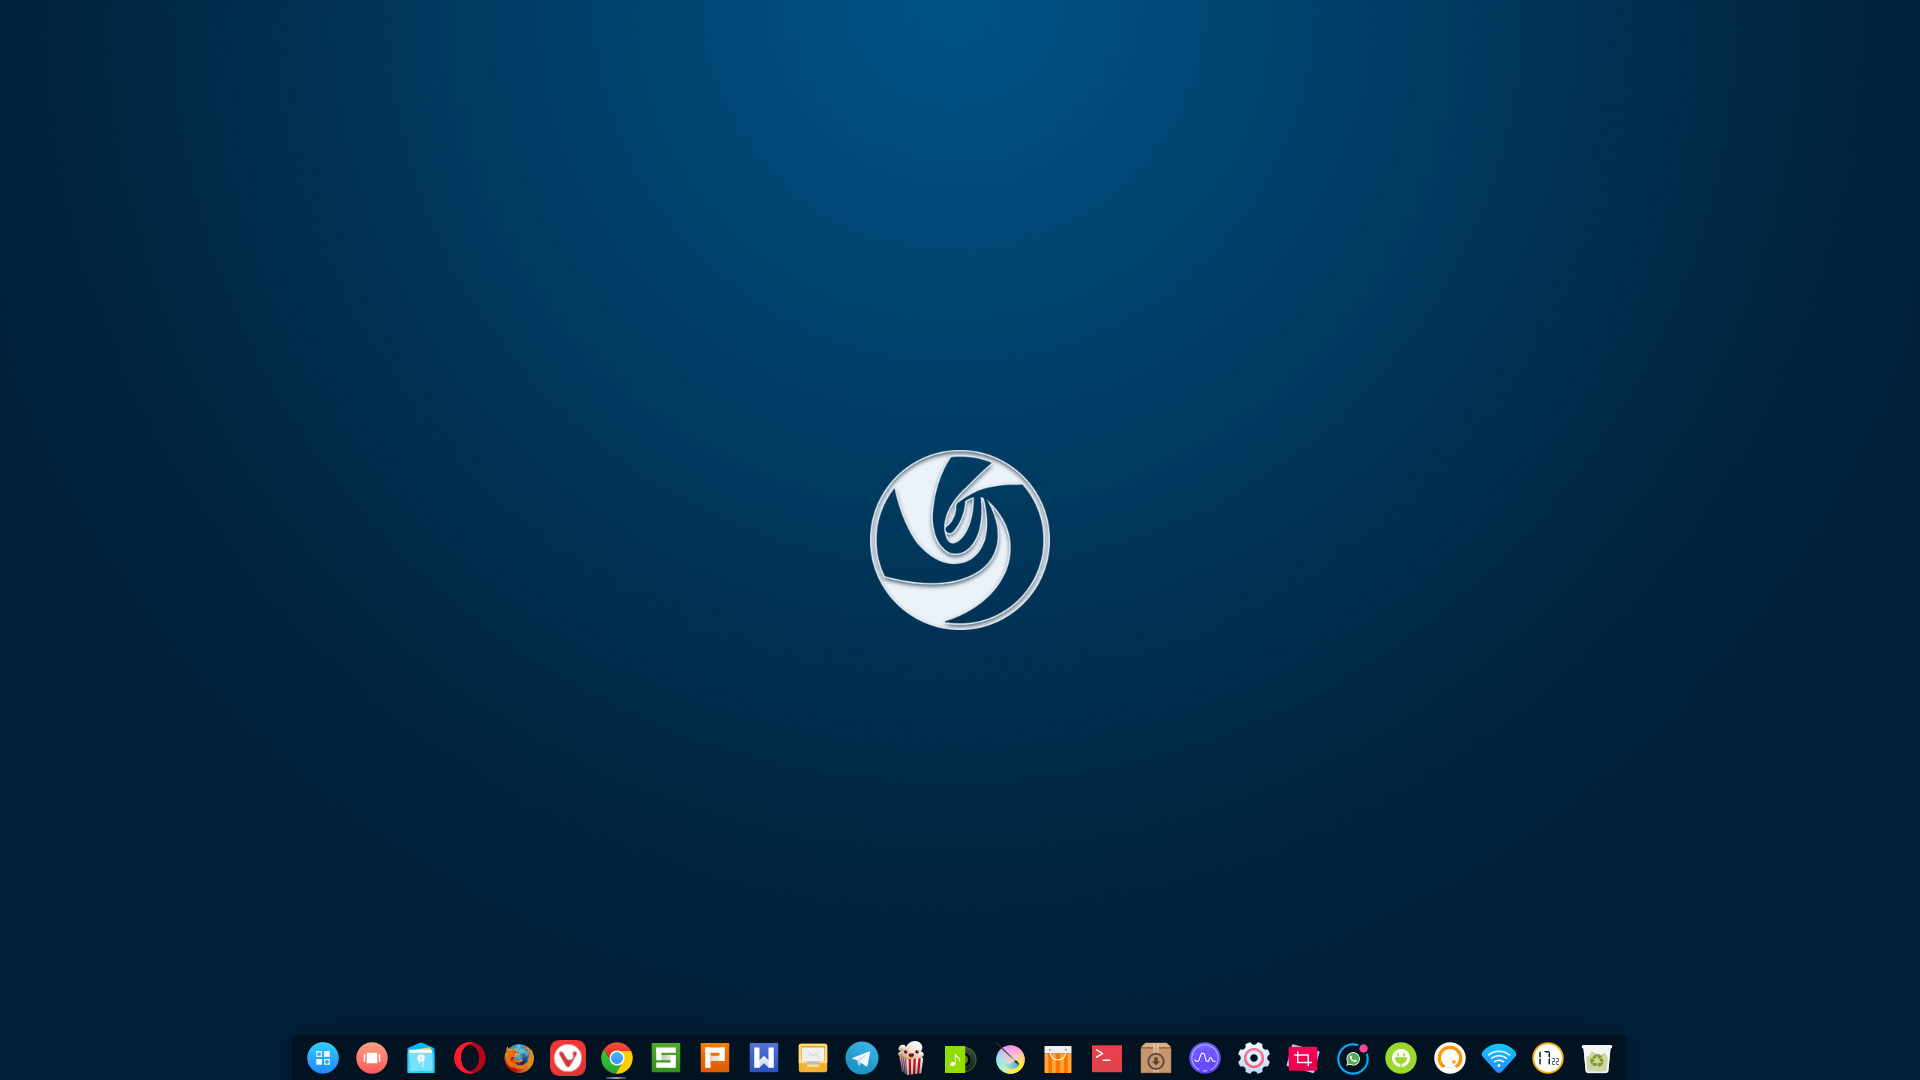 Como Descargar E Instalar El Escritorio Deepin En Linux Ubuntu Facilmente Ejemplo Mira Como Se Hace - como descargar roblox para linux